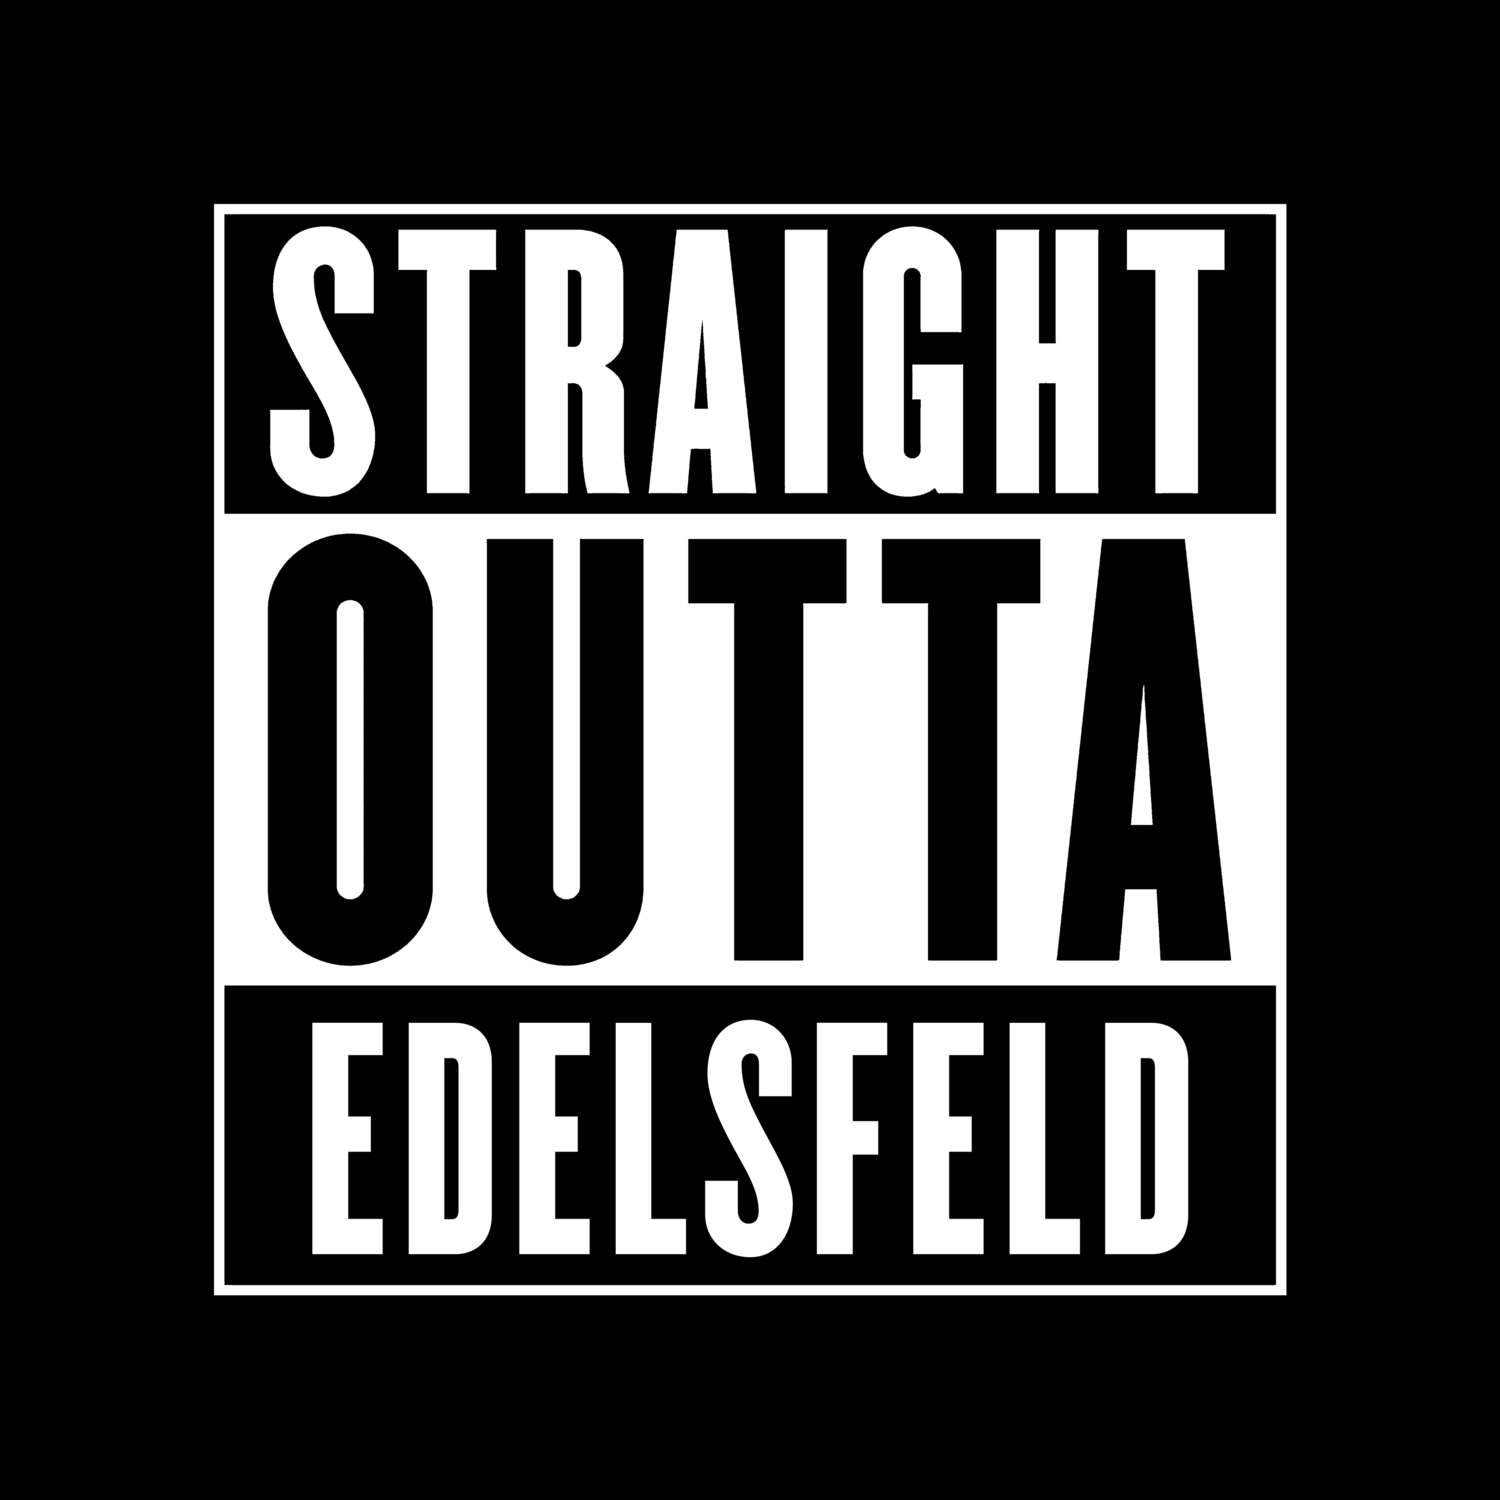 Edelsfeld T-Shirt »Straight Outta«